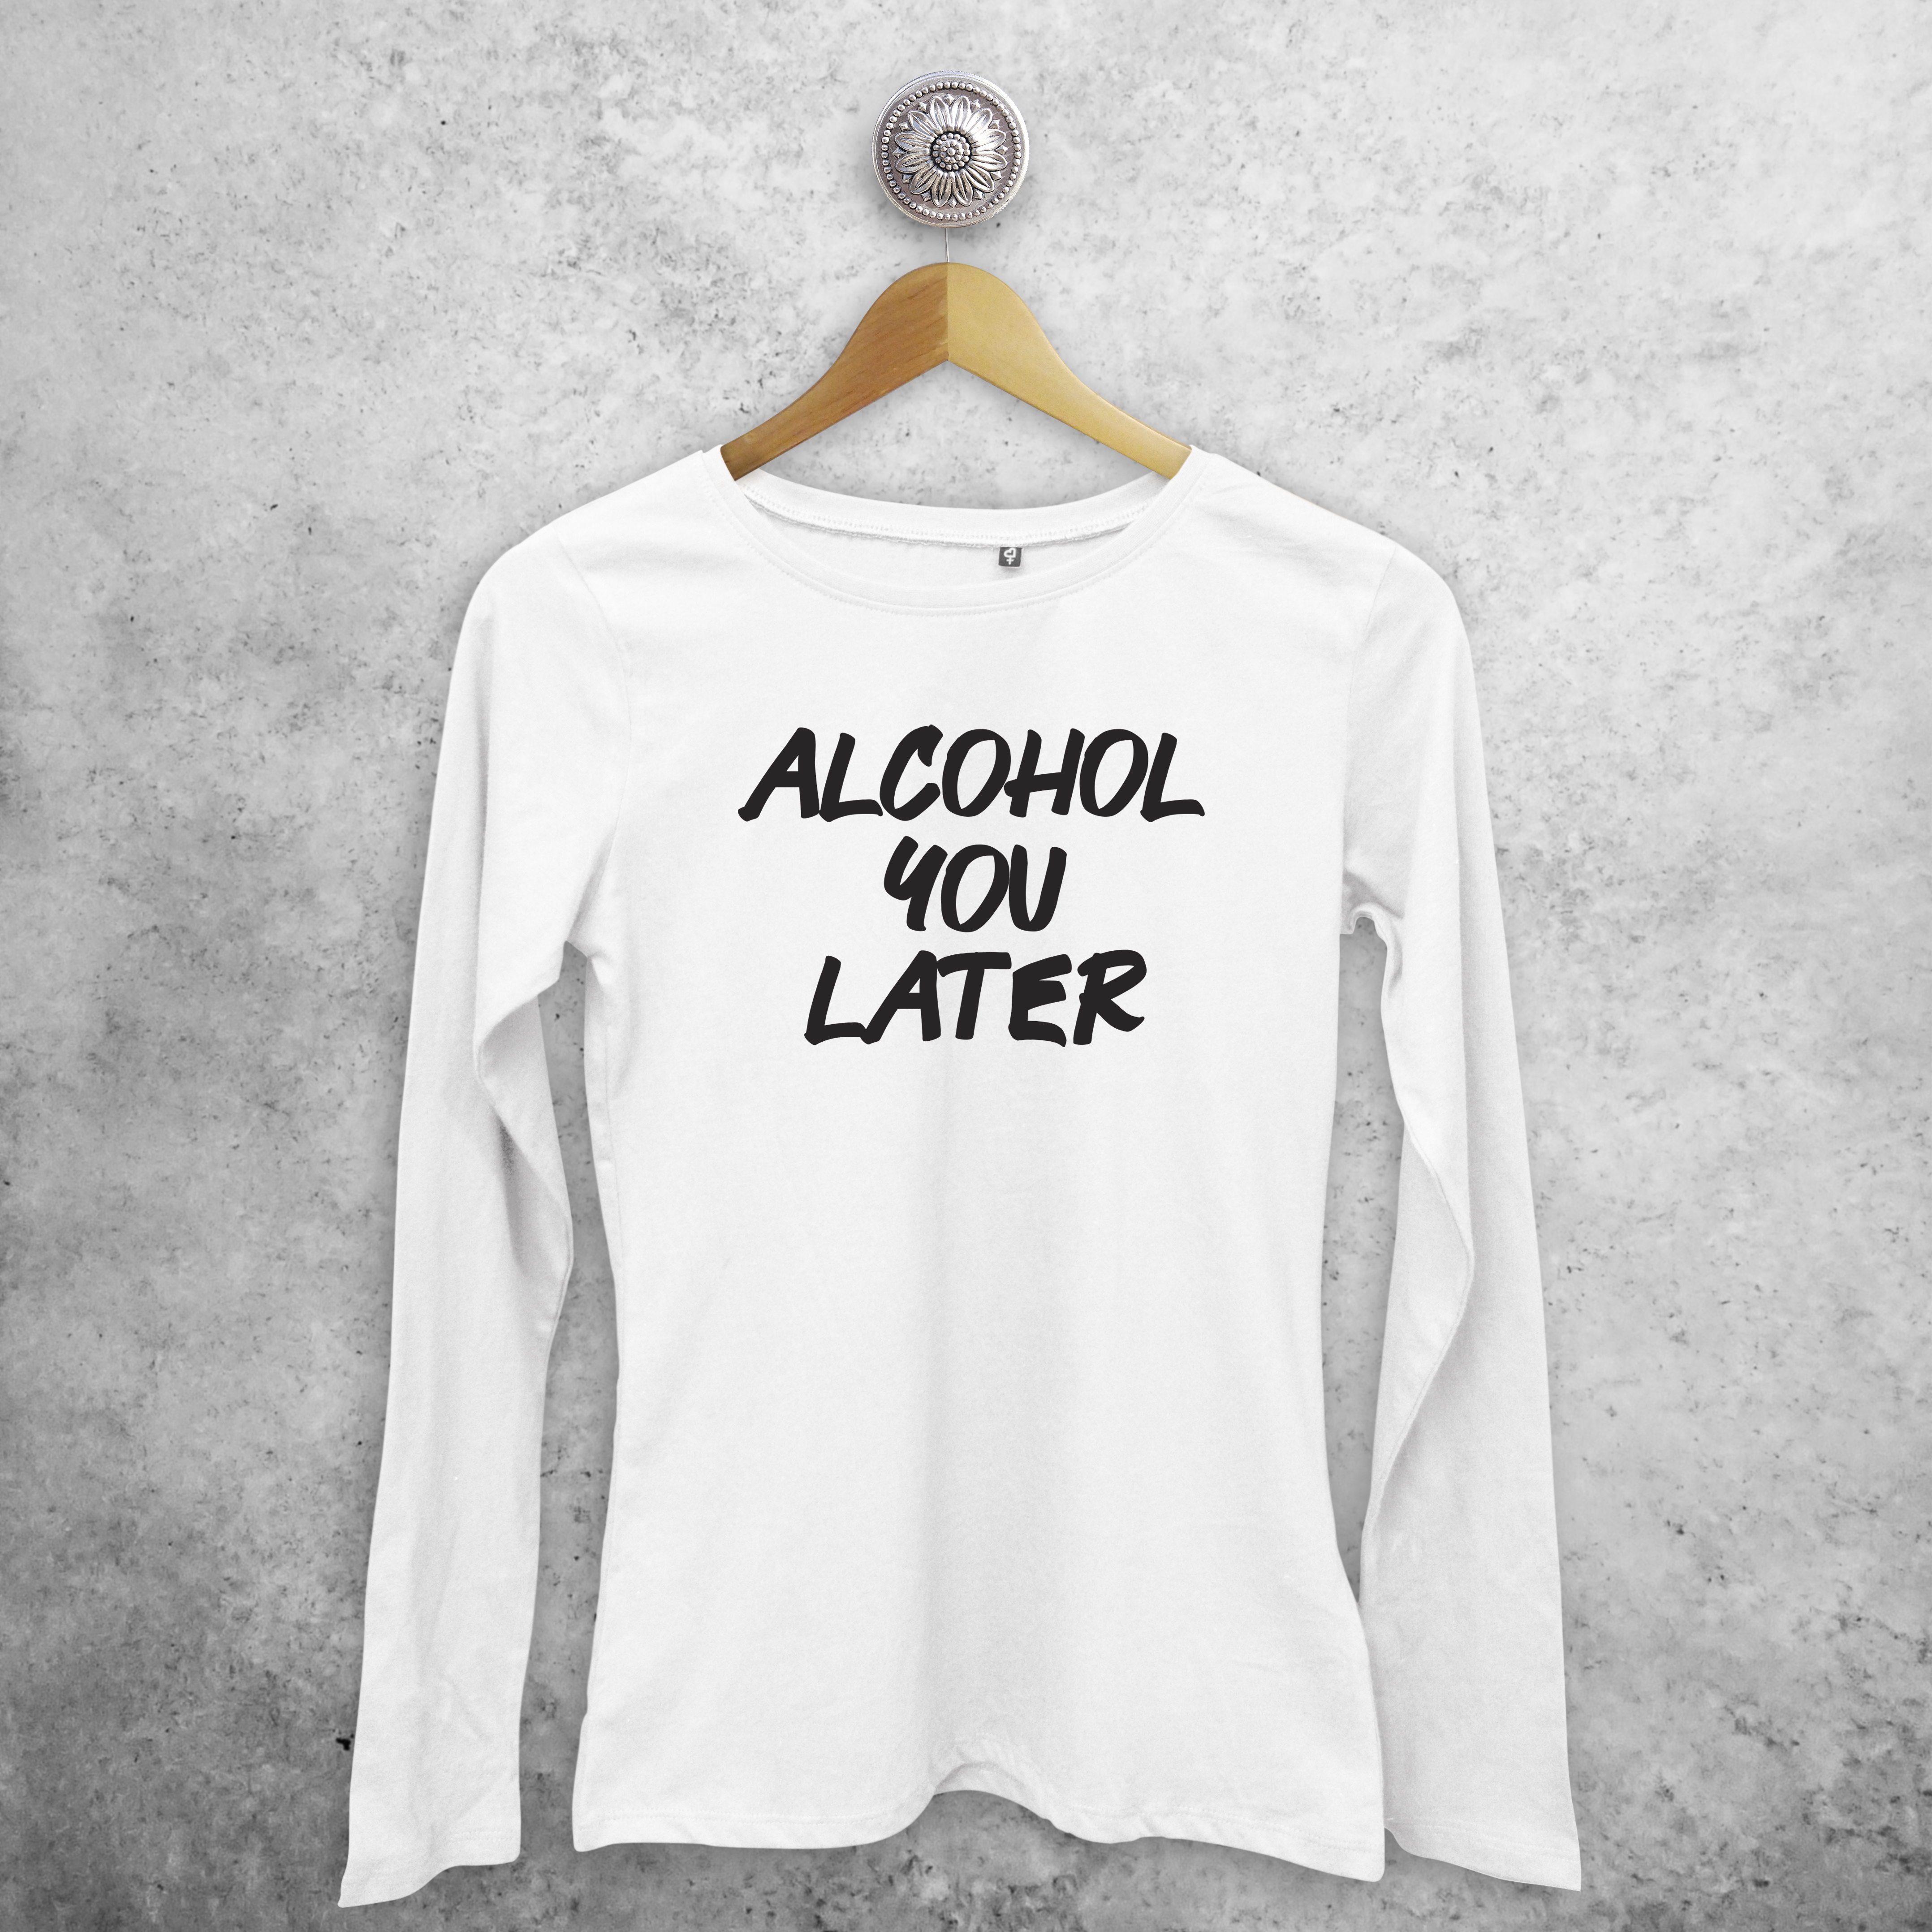 'Alcohol you later' volwassene shirt met lange mouwen